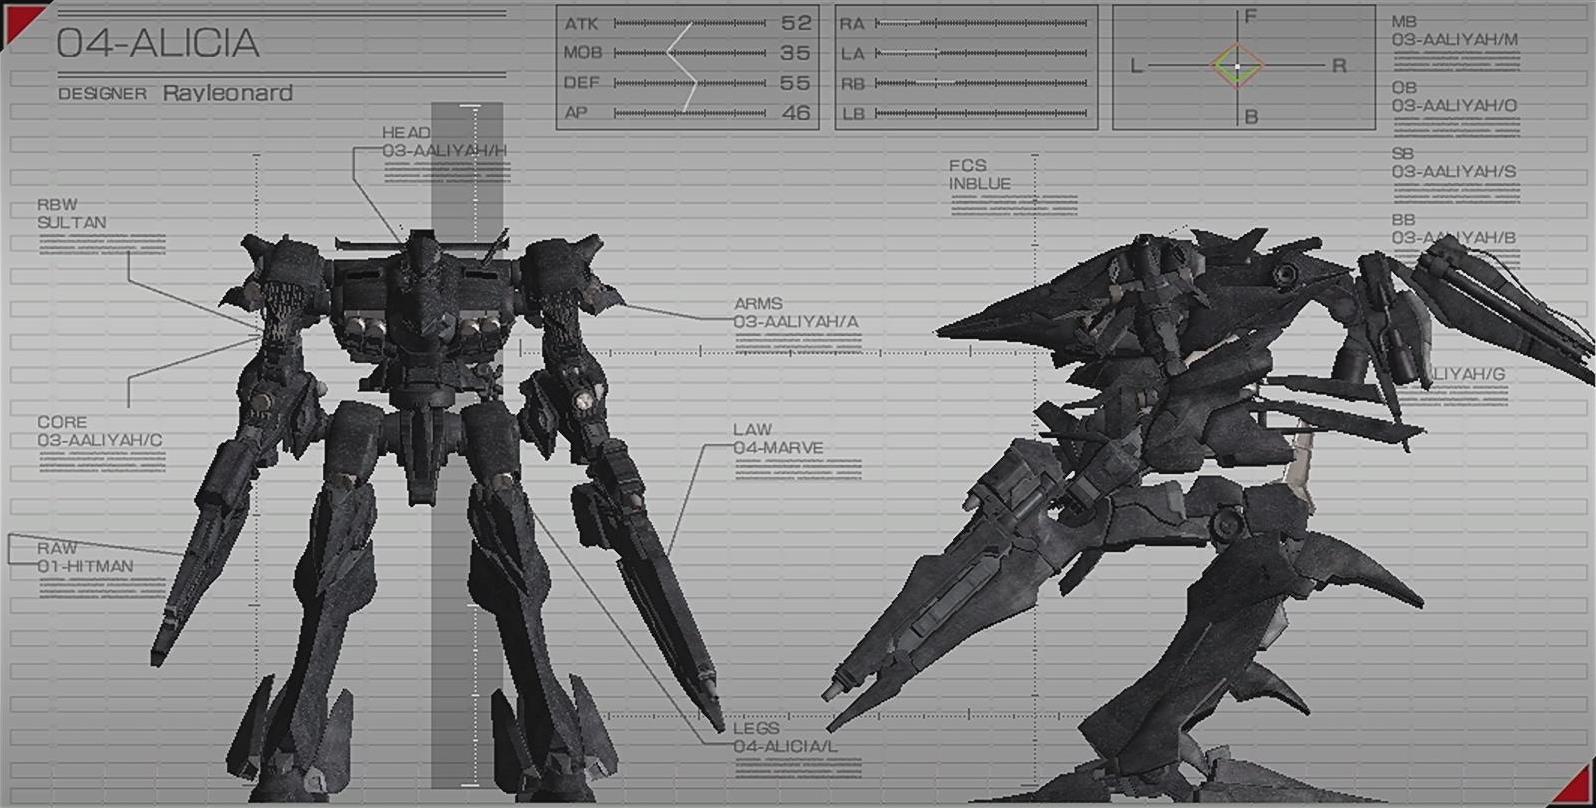 04-ALICIA | Armored Core Wiki | Fandom